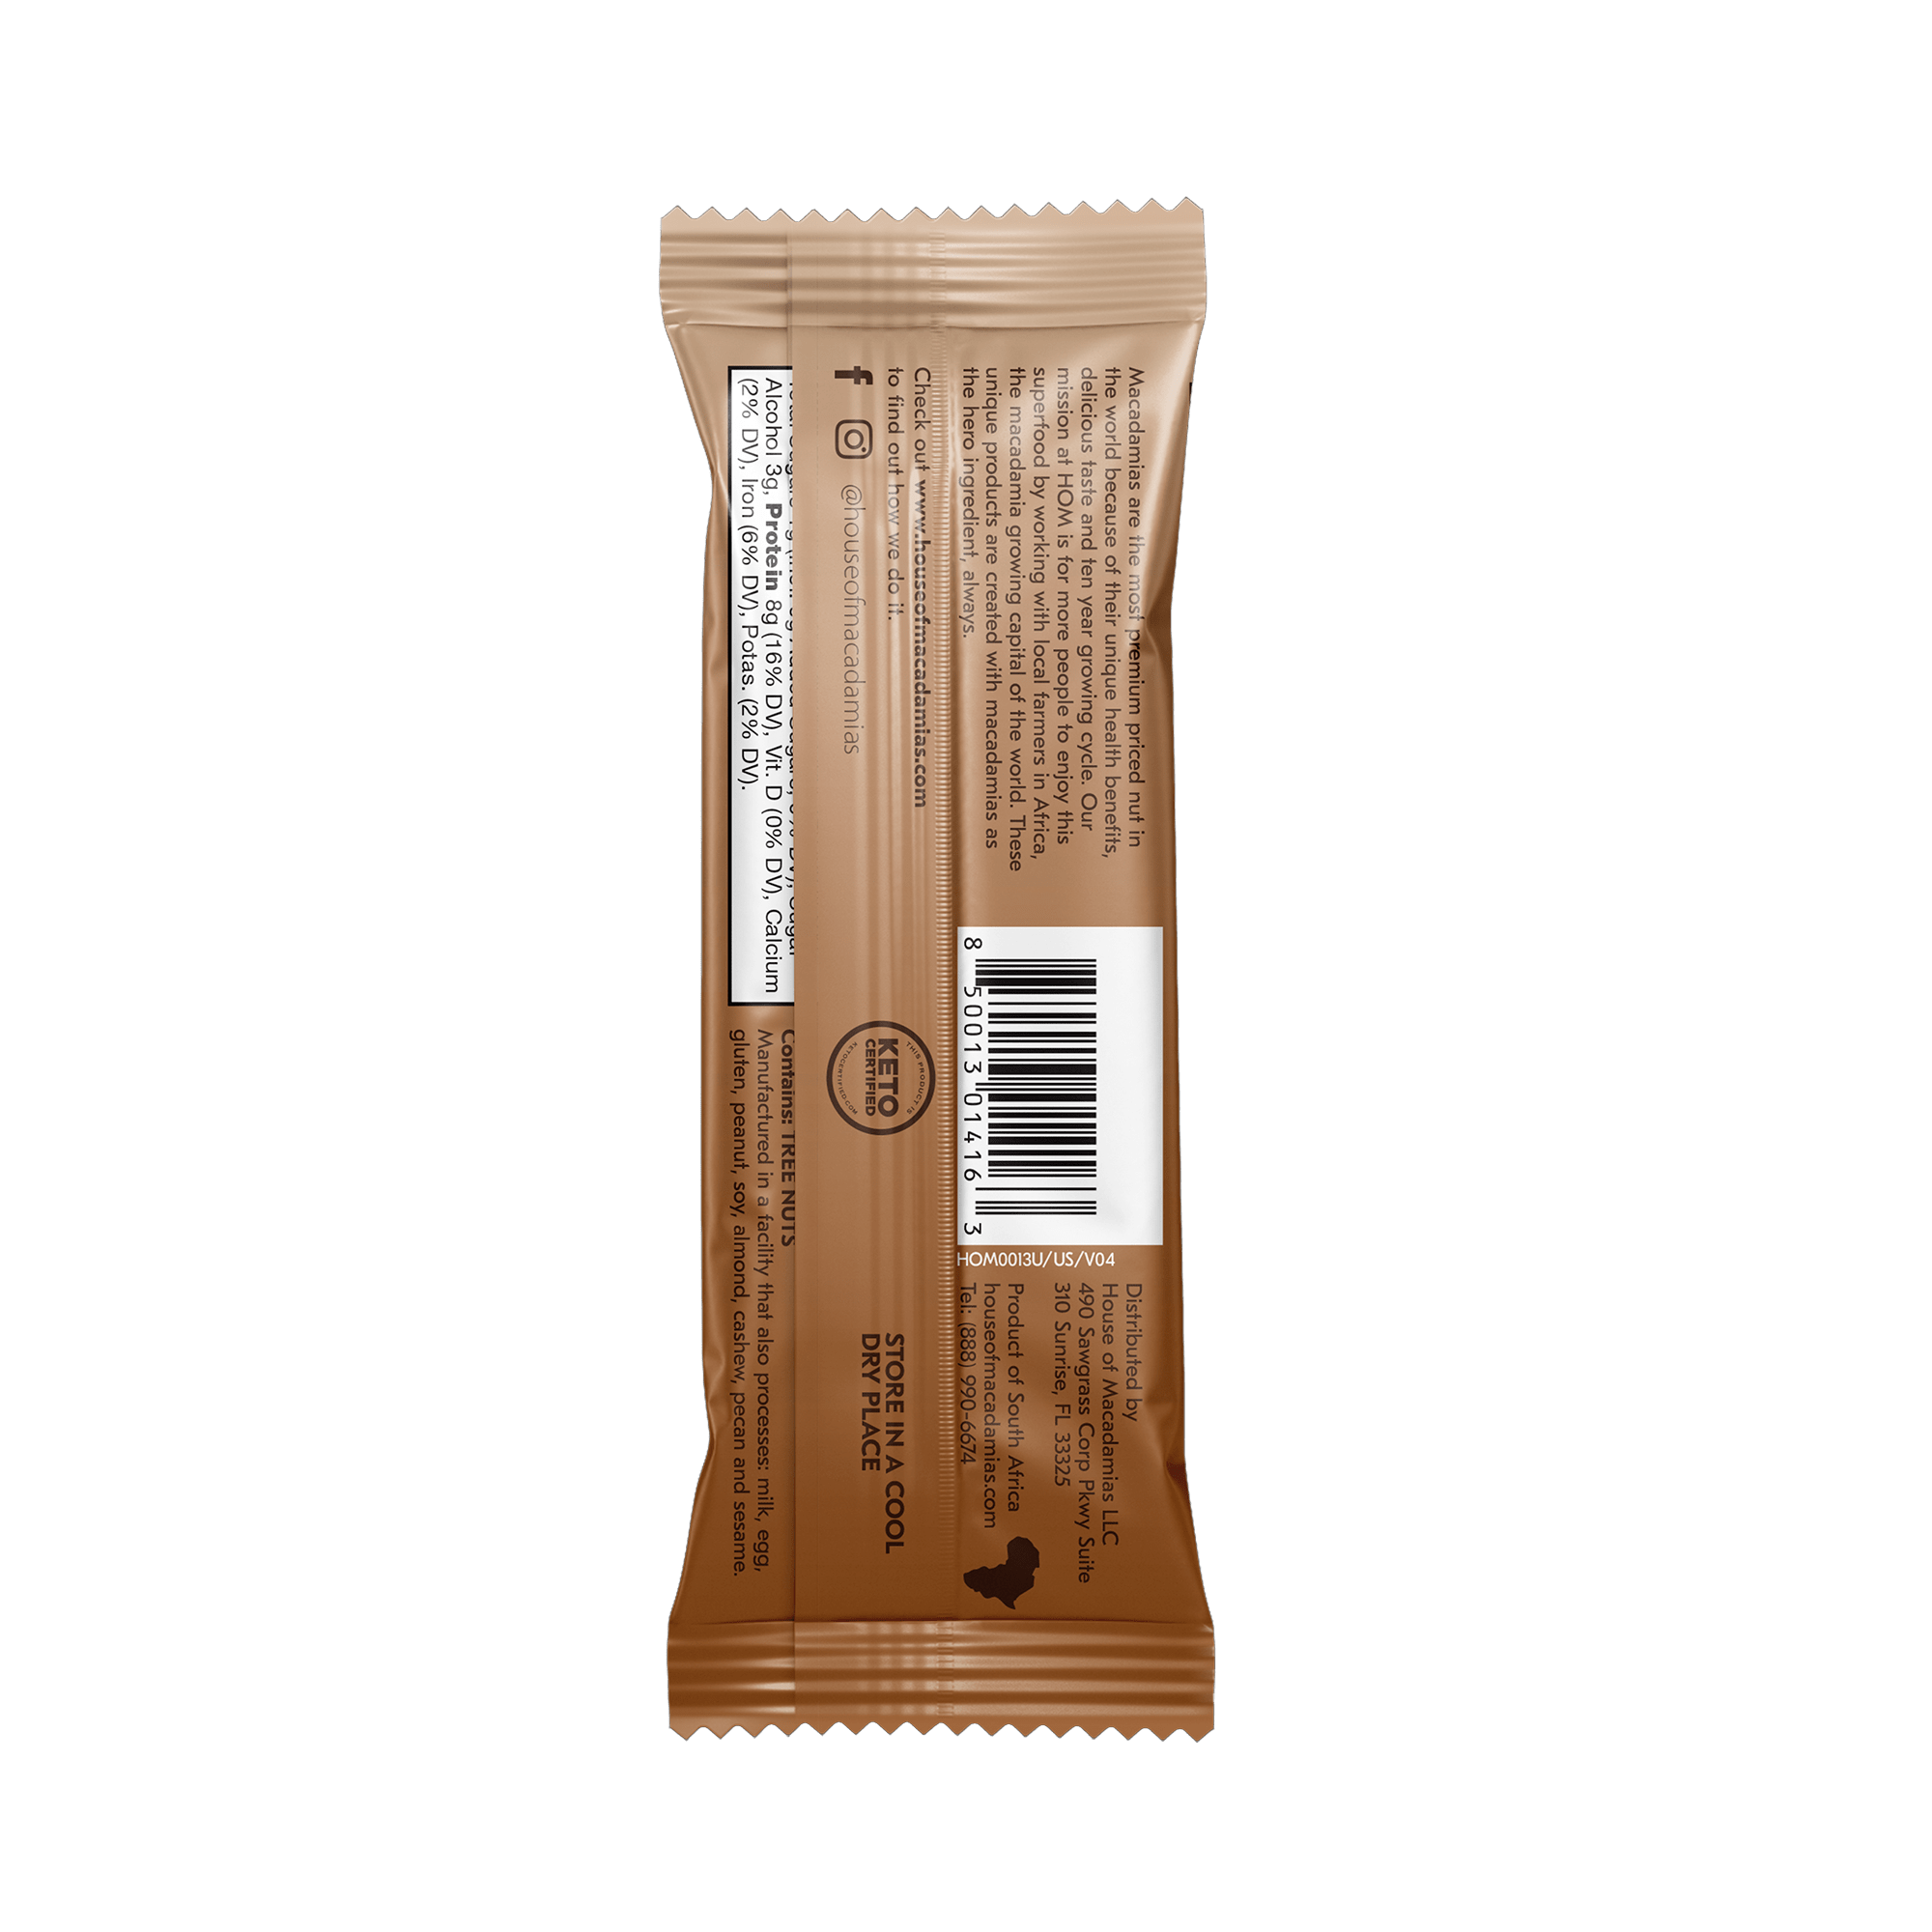 Dark Chocolate Macadamia Protein Bars (12 Bars)